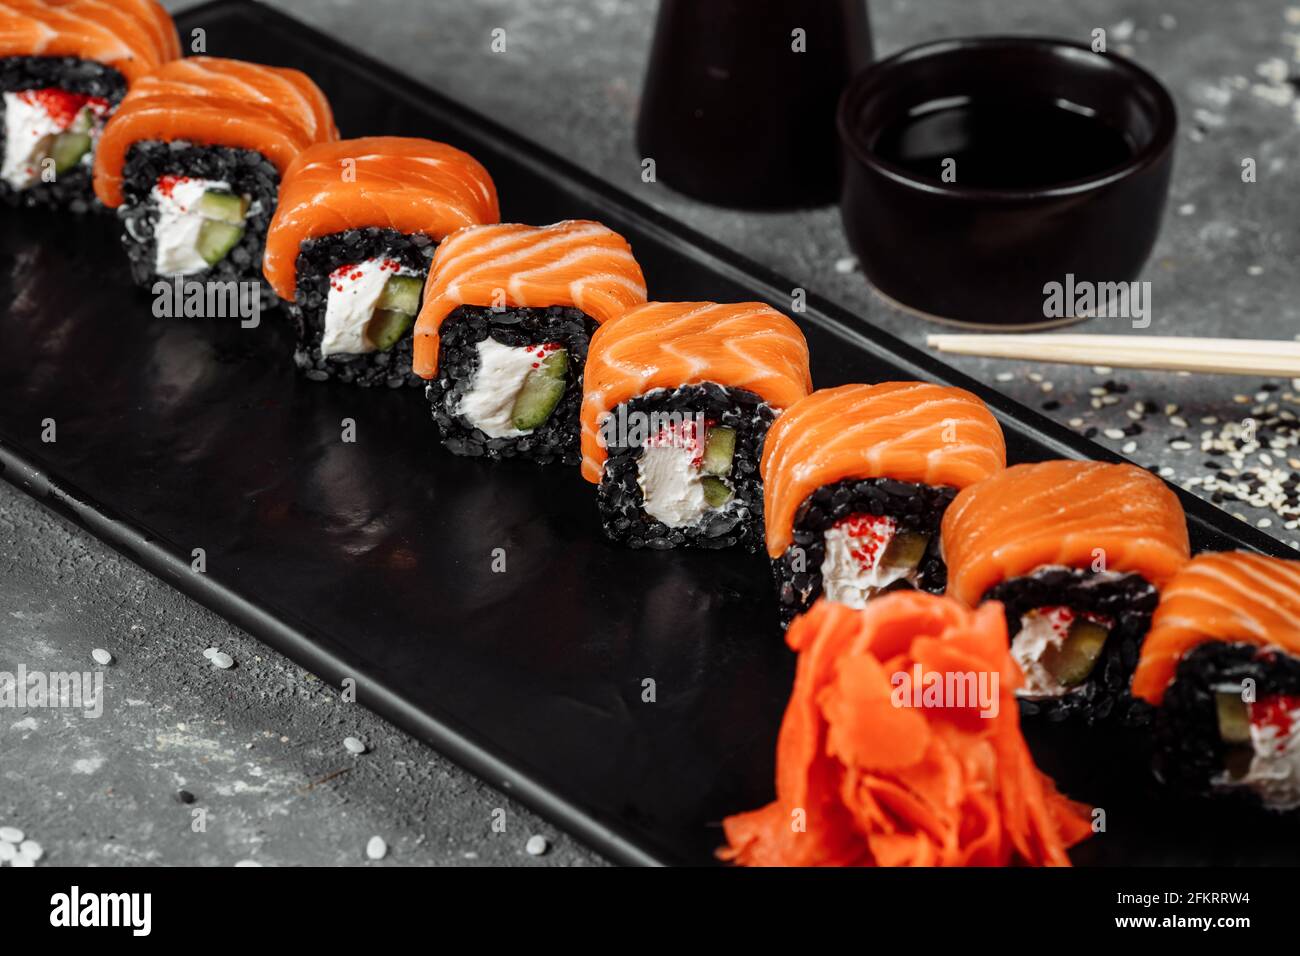 Un set di sushi Rolls Philadelphia con pesce rosso, formaggio cremoso e nero si trova in una barca a tavola. Sushi rotola su sfondo grigio Foto Stock